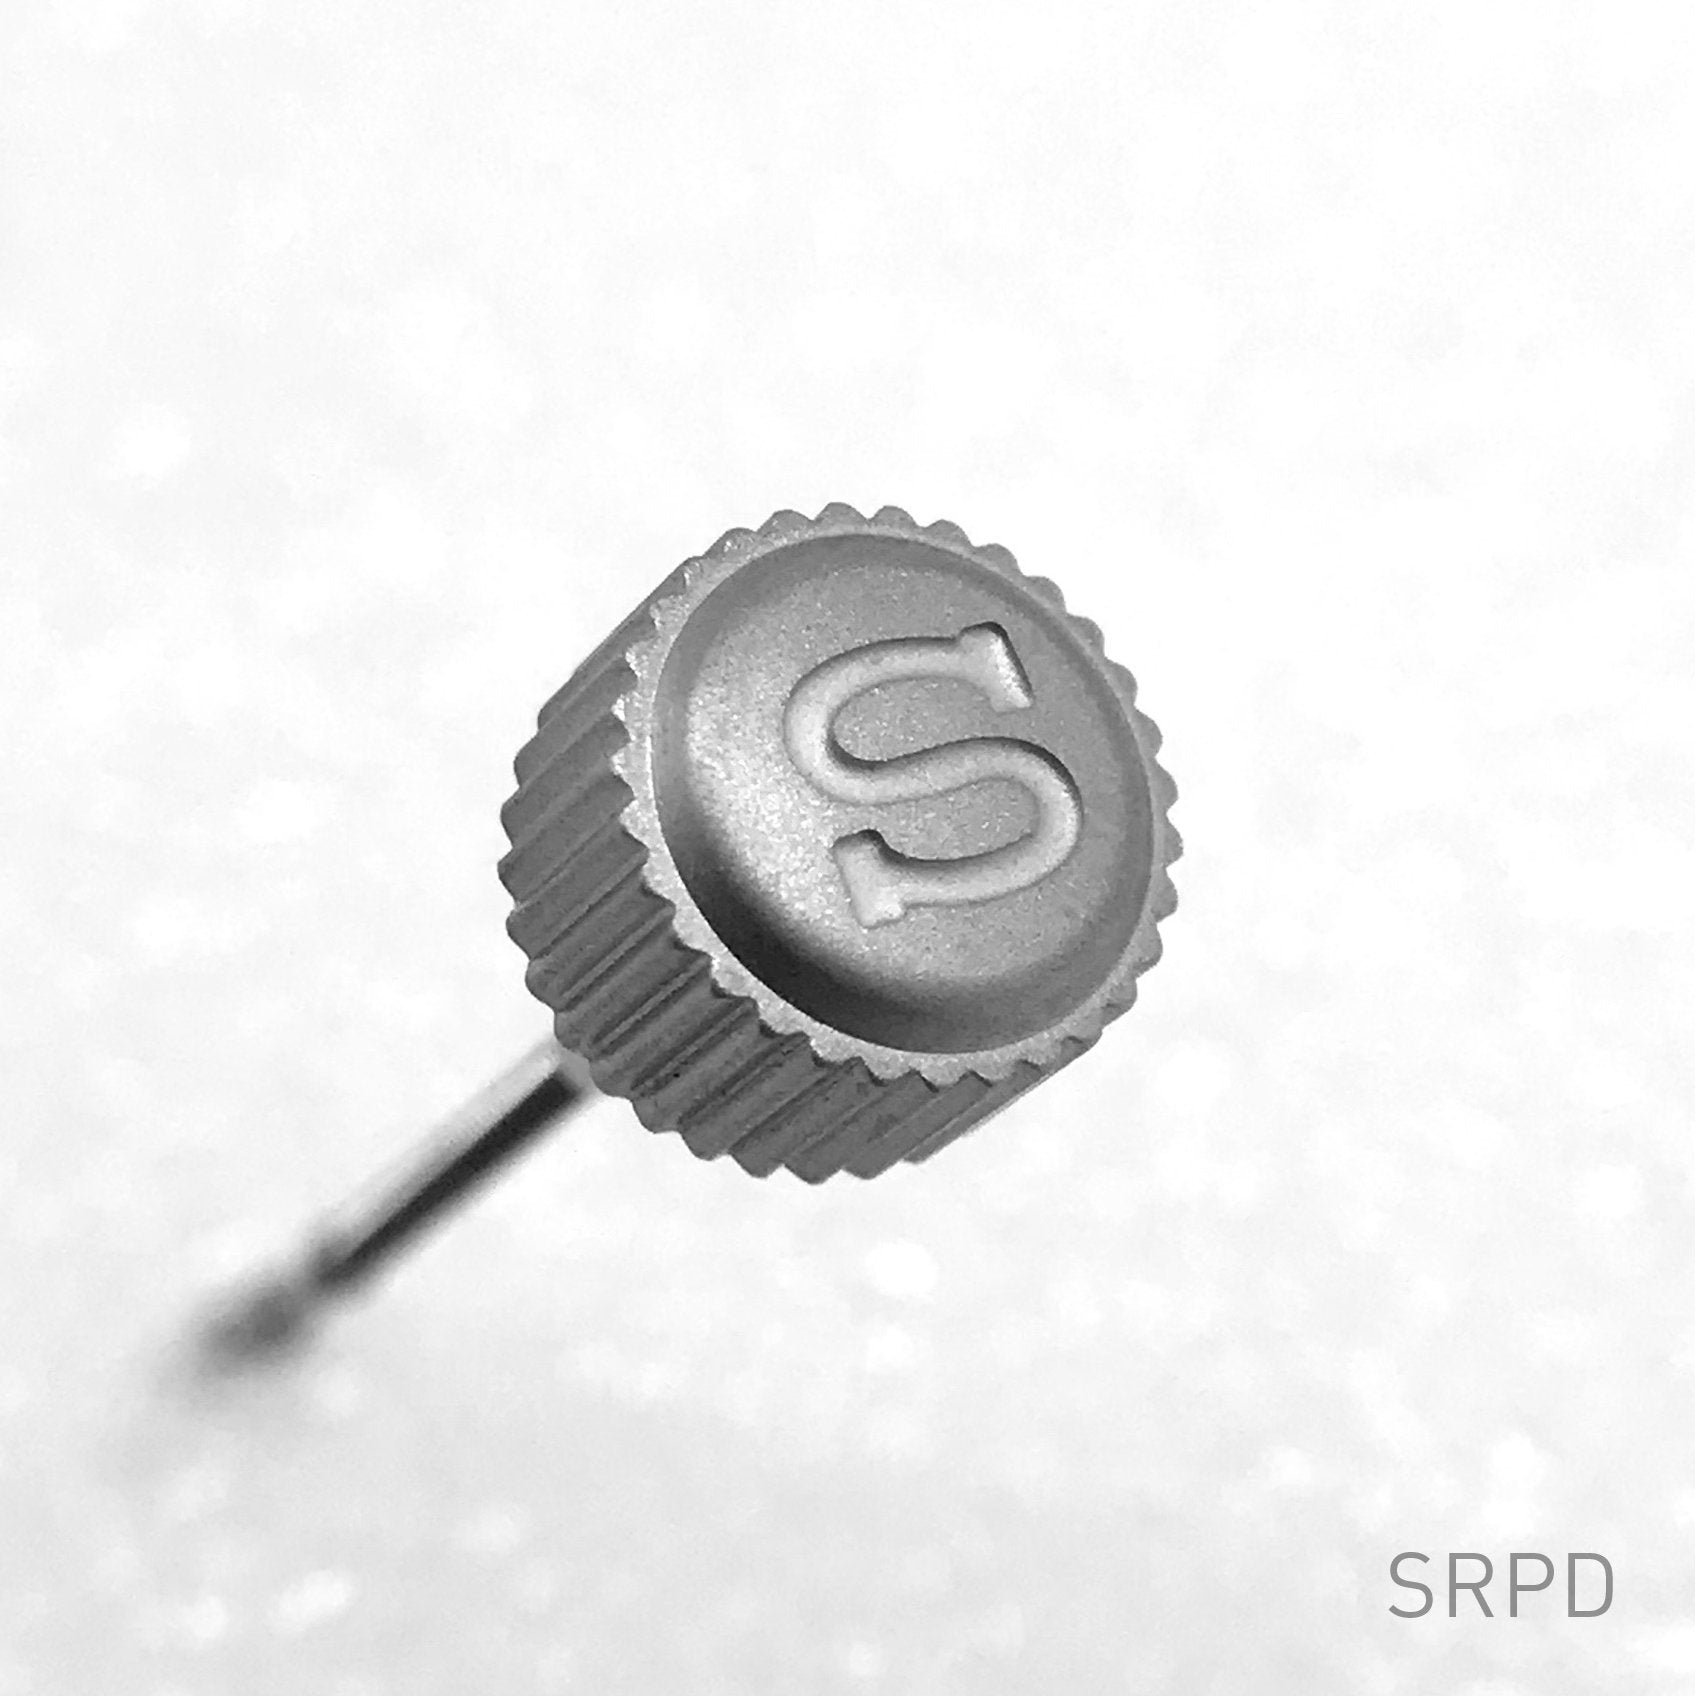 Crown - SRPD - Bead Blasted Steel - "S"